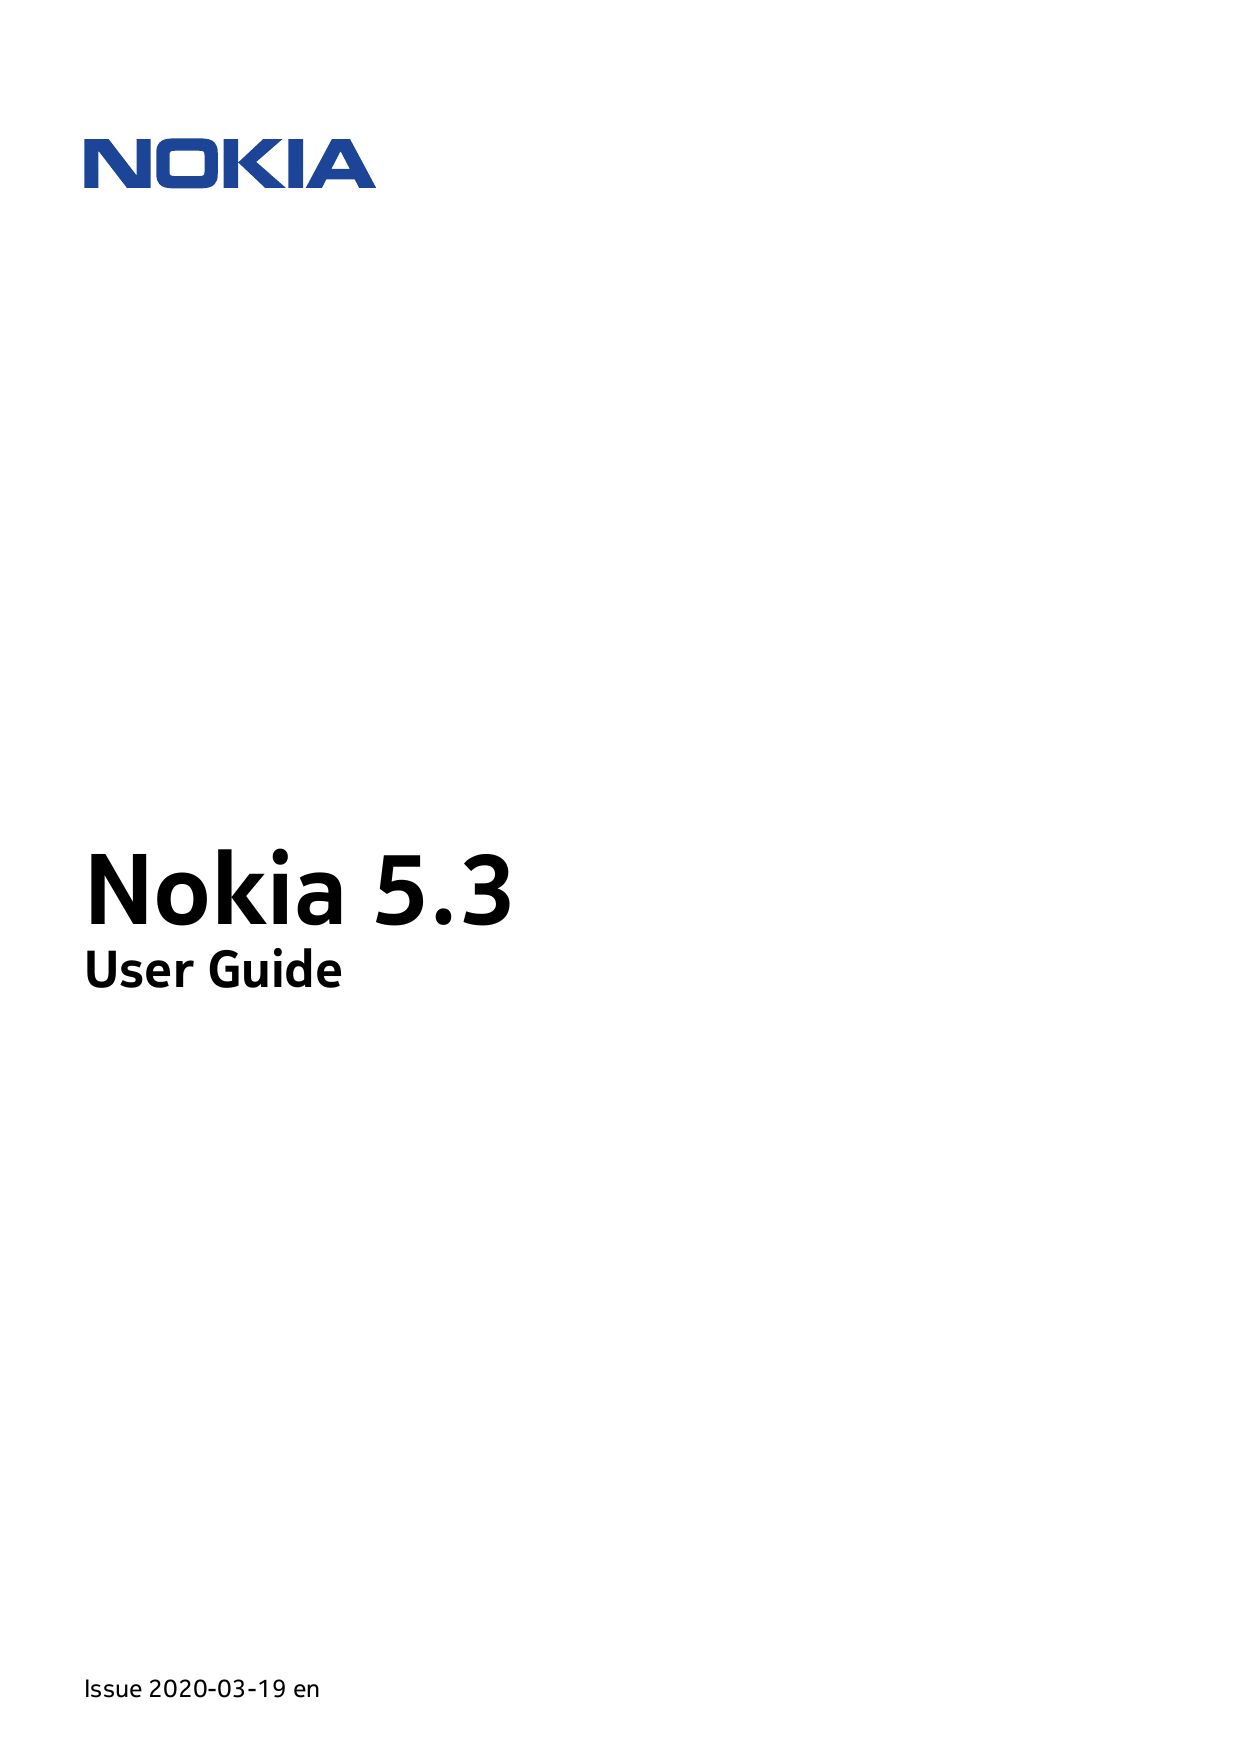 Nokia 5.3User GuideIssue 2020-03-19 en